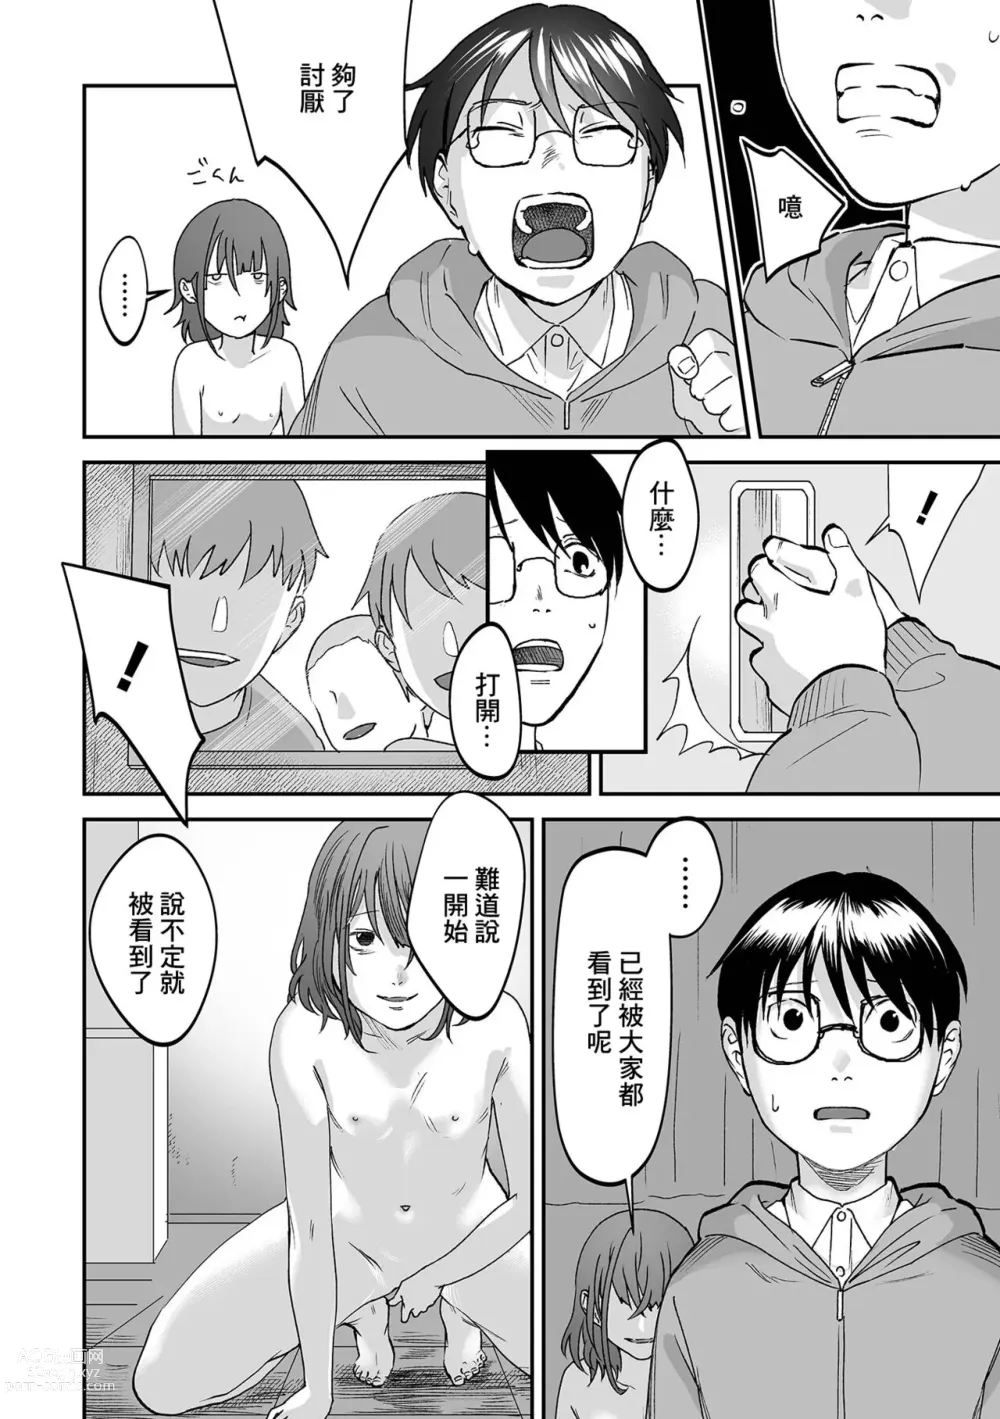 Page 6 of manga Kurai Tokoro e